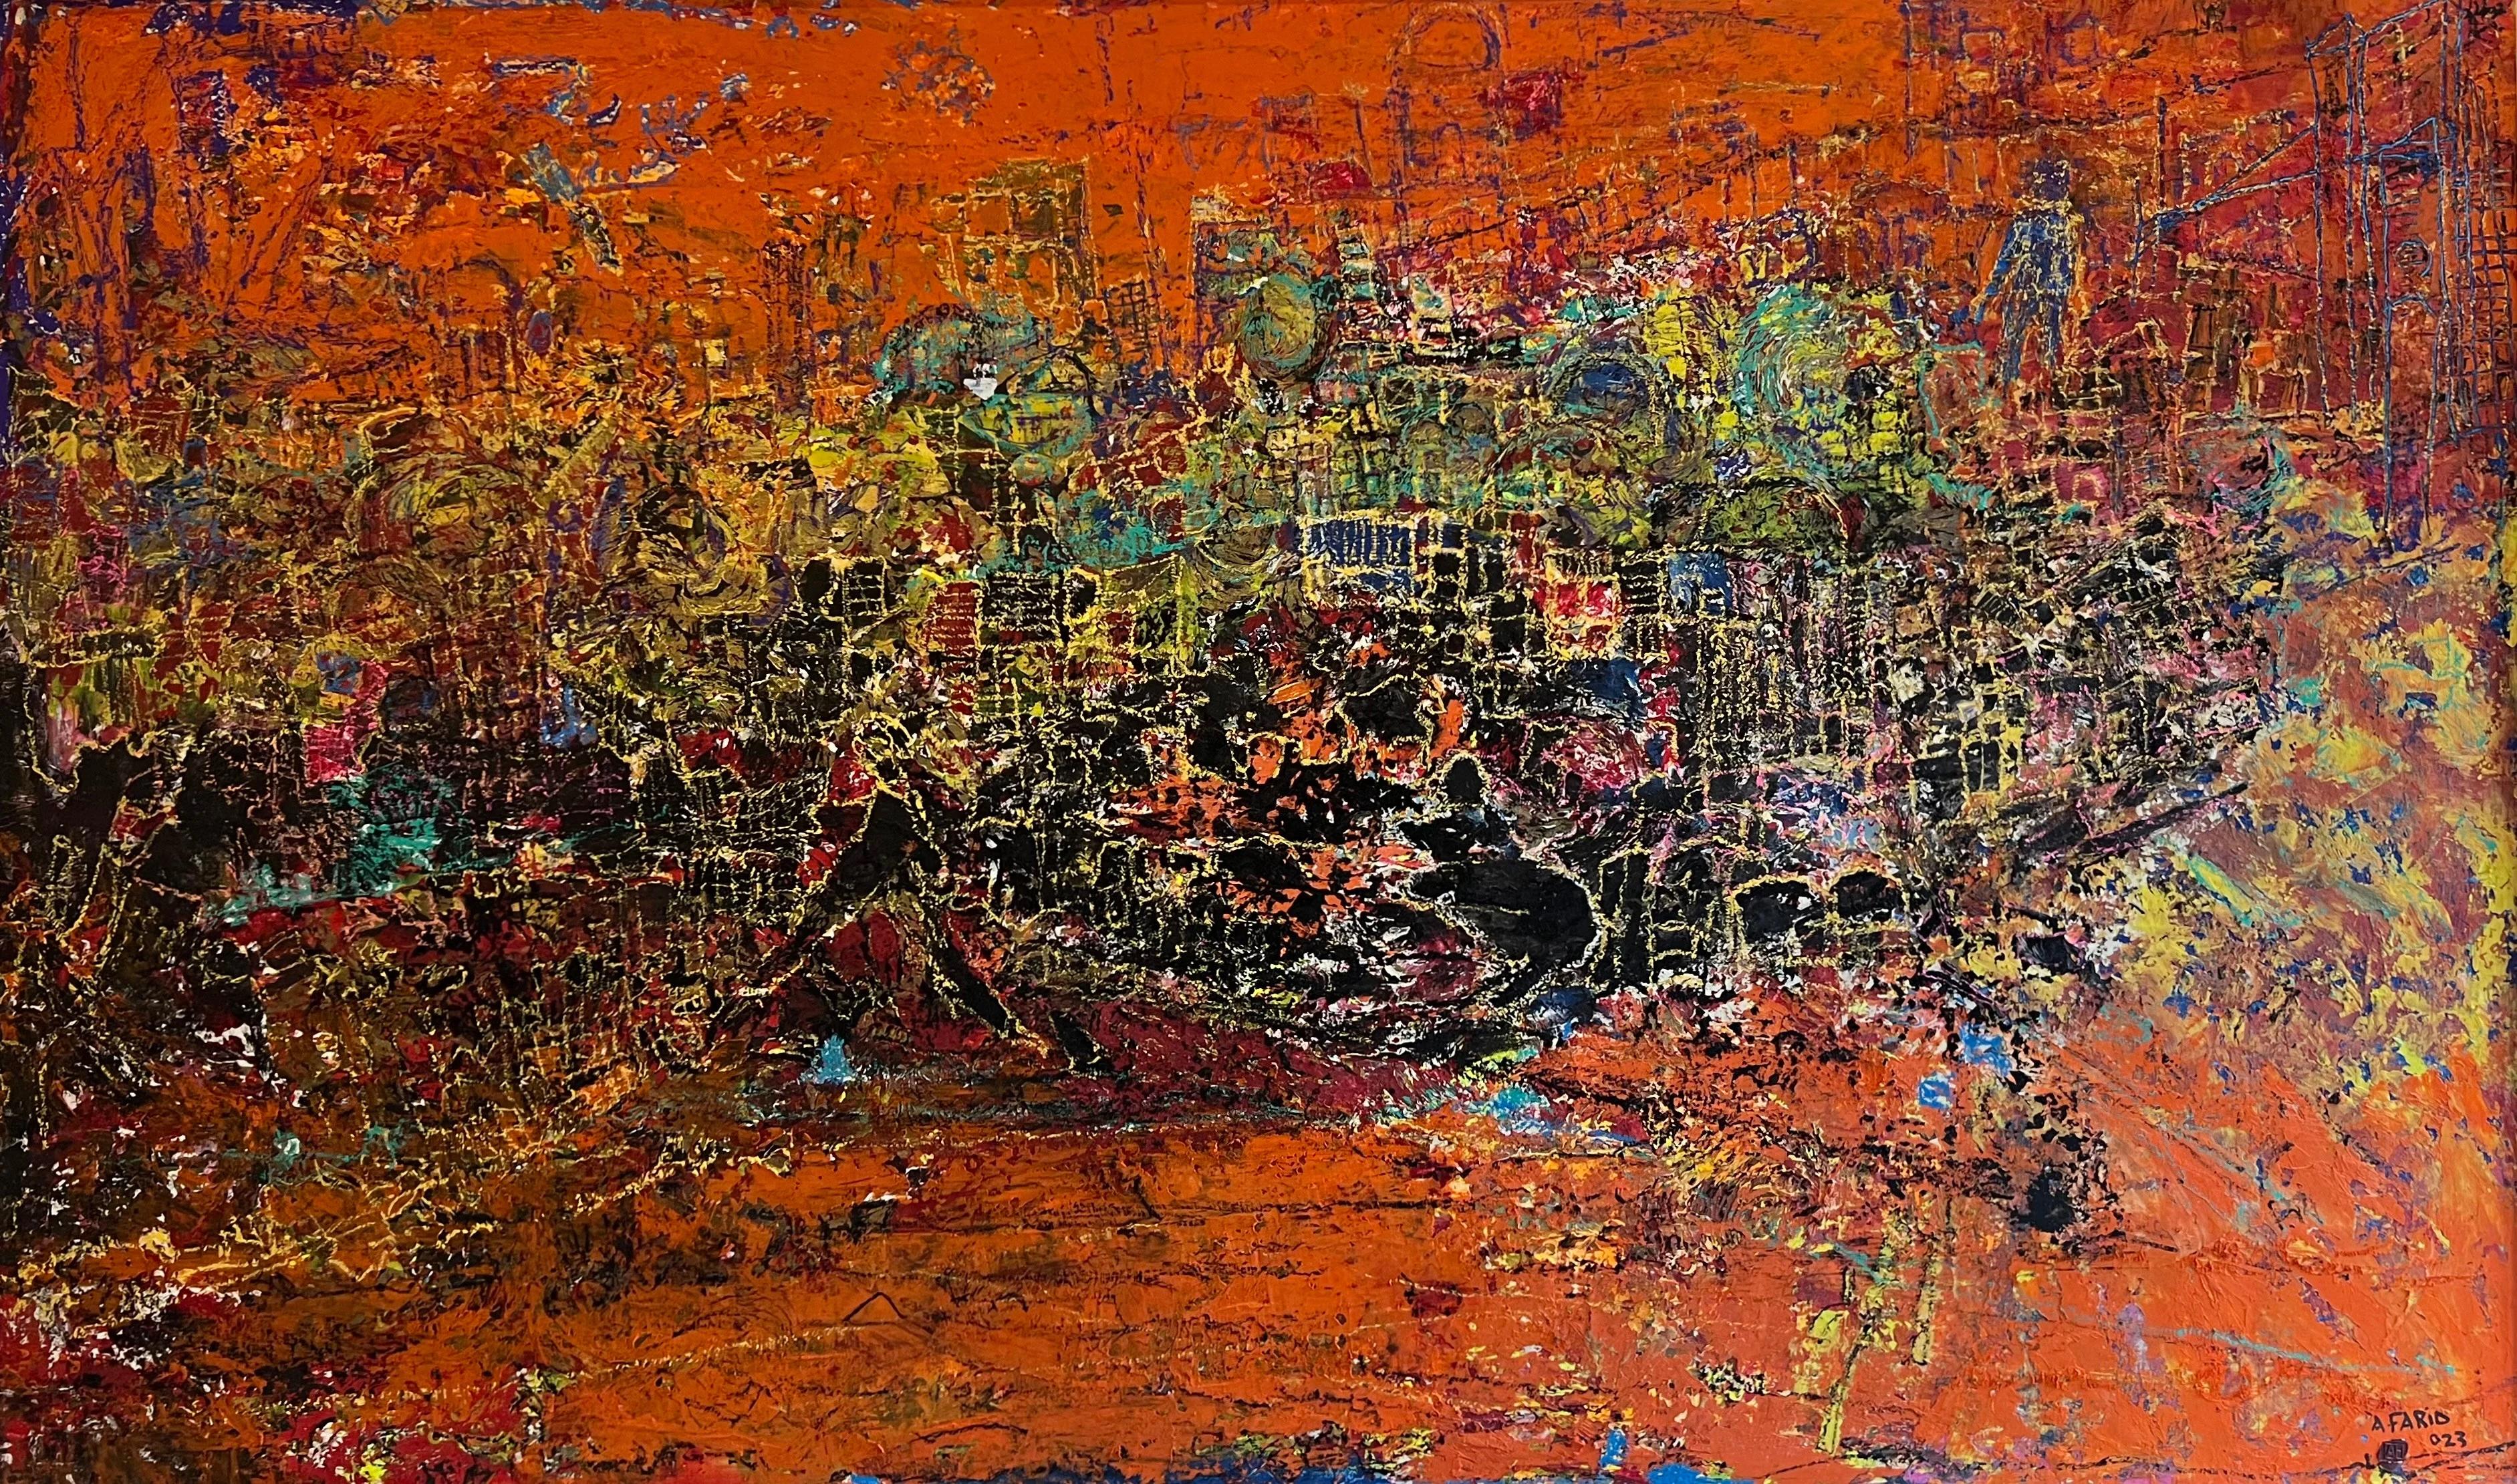 "Lava" Abstrakt gemischte Medien Gemälde 47" x 79" Zoll von Ahmed Farid

Mischtechnik auf Leinwand

Farid wurde 1950 in Kairo, Ägypten, geboren, wo er heute lebt und arbeitet. Er ist ein autodidaktischer ägyptischer Maler, der eine private